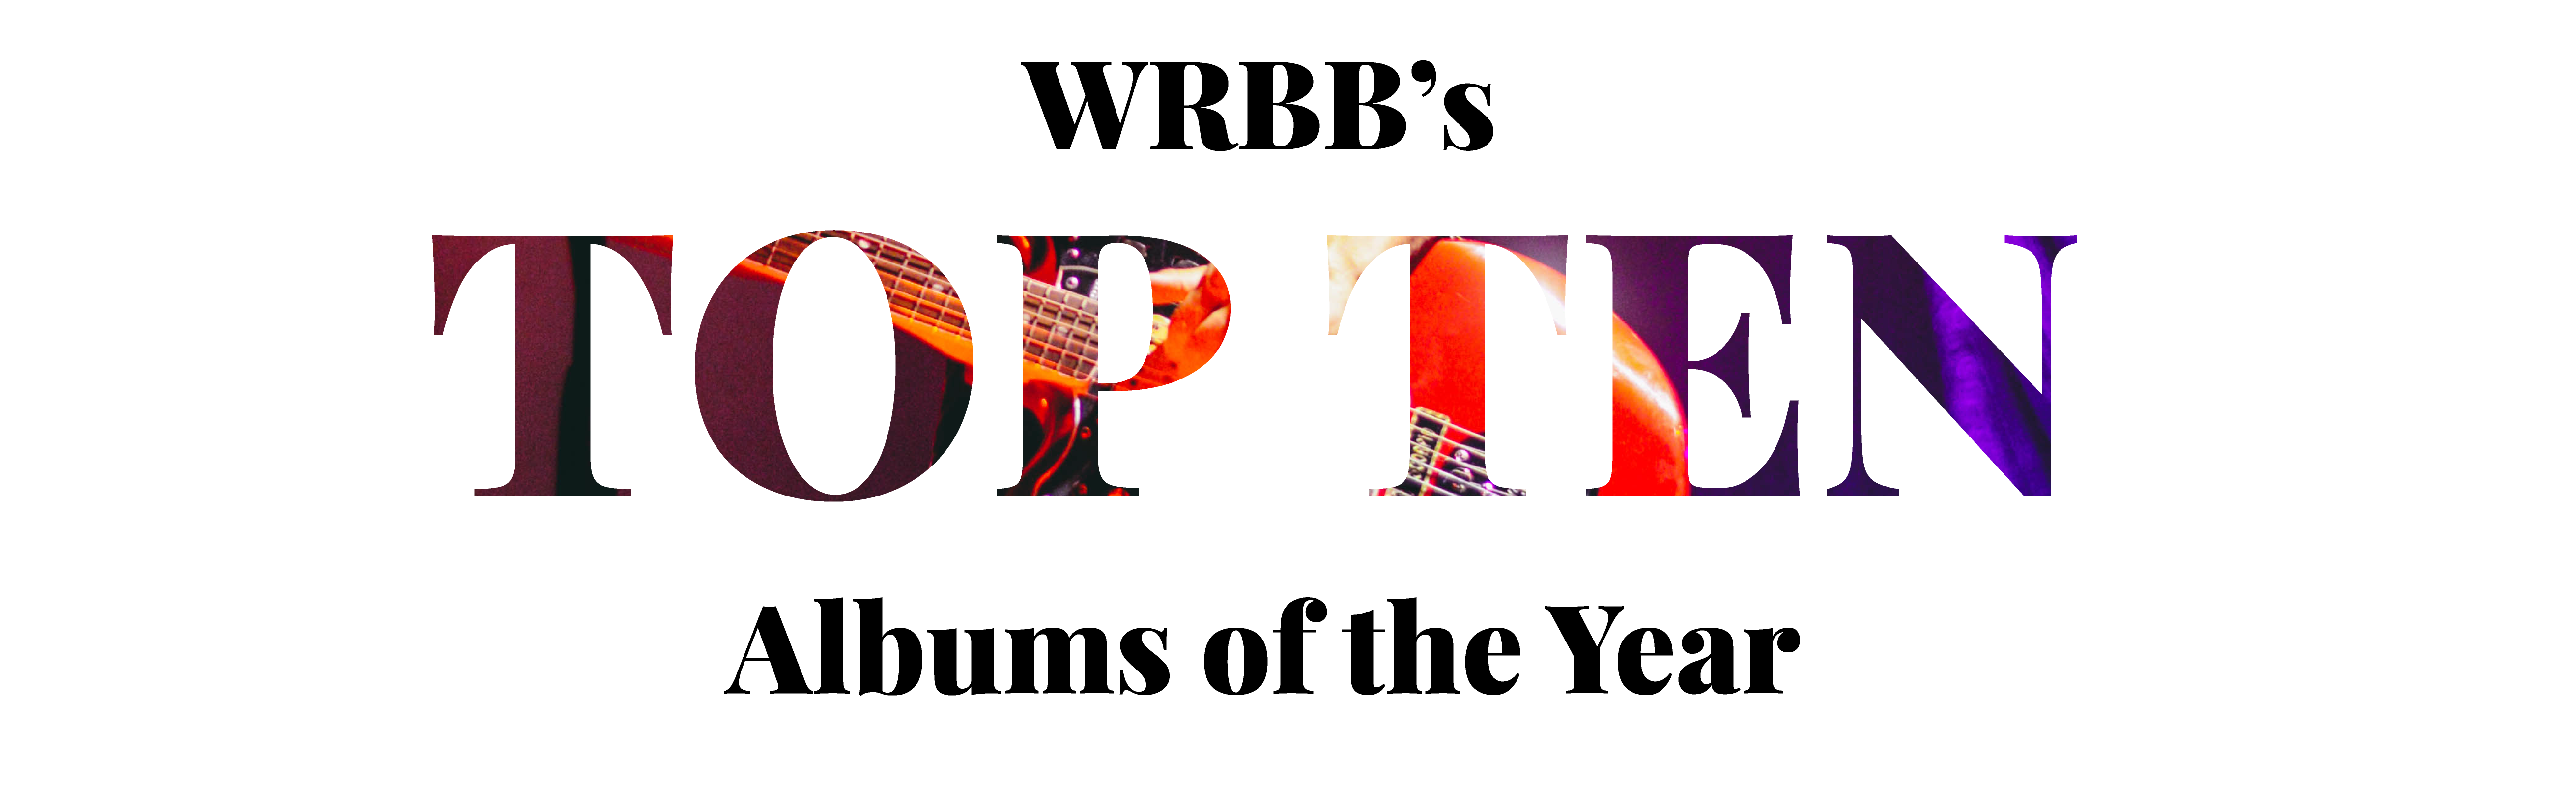 WRBB’s Top Ten Albums of 2018